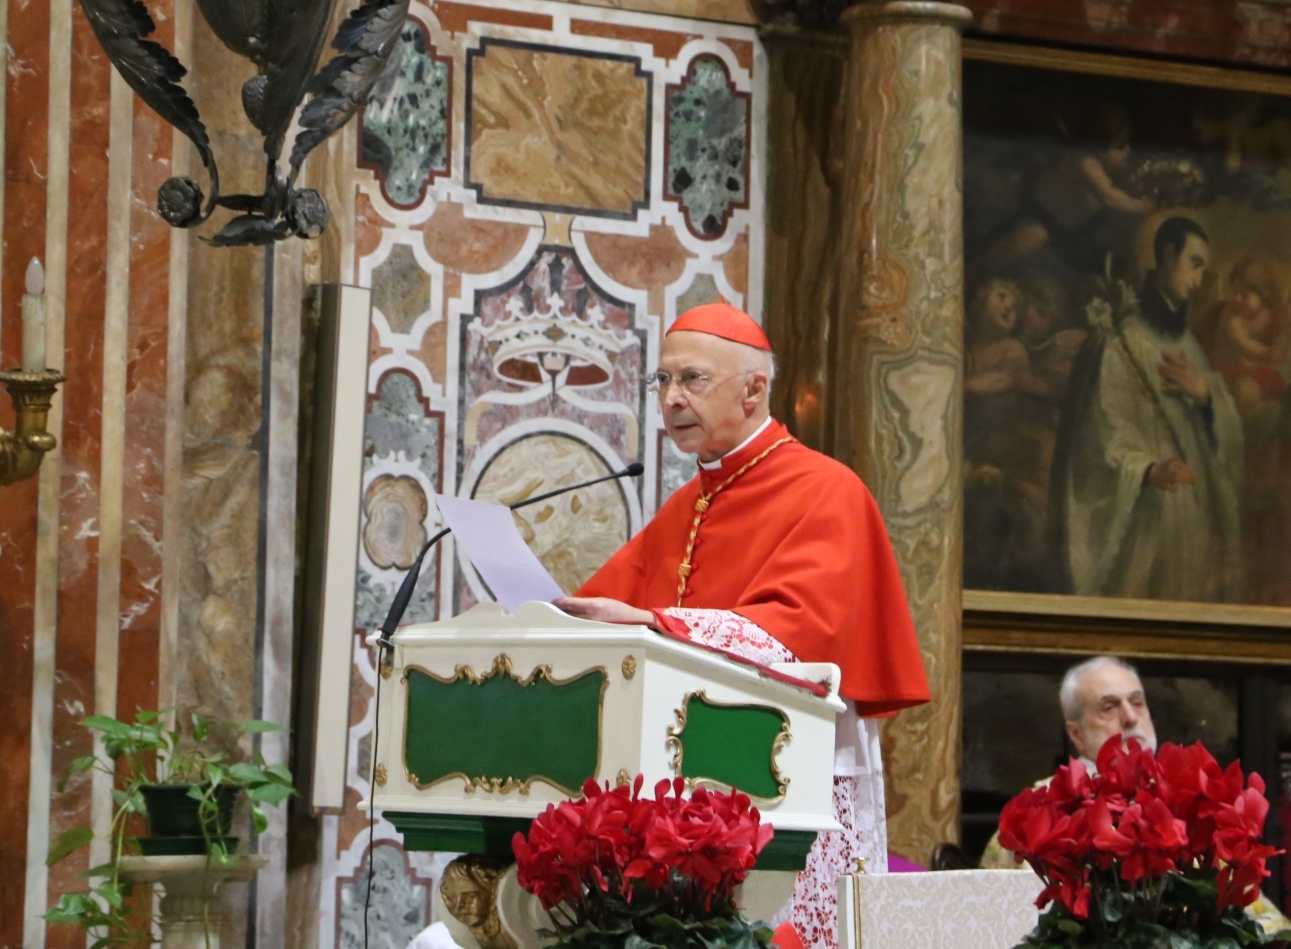 È stata trasmessa in diretta su Telenord la messa del cardinale Bagnasco